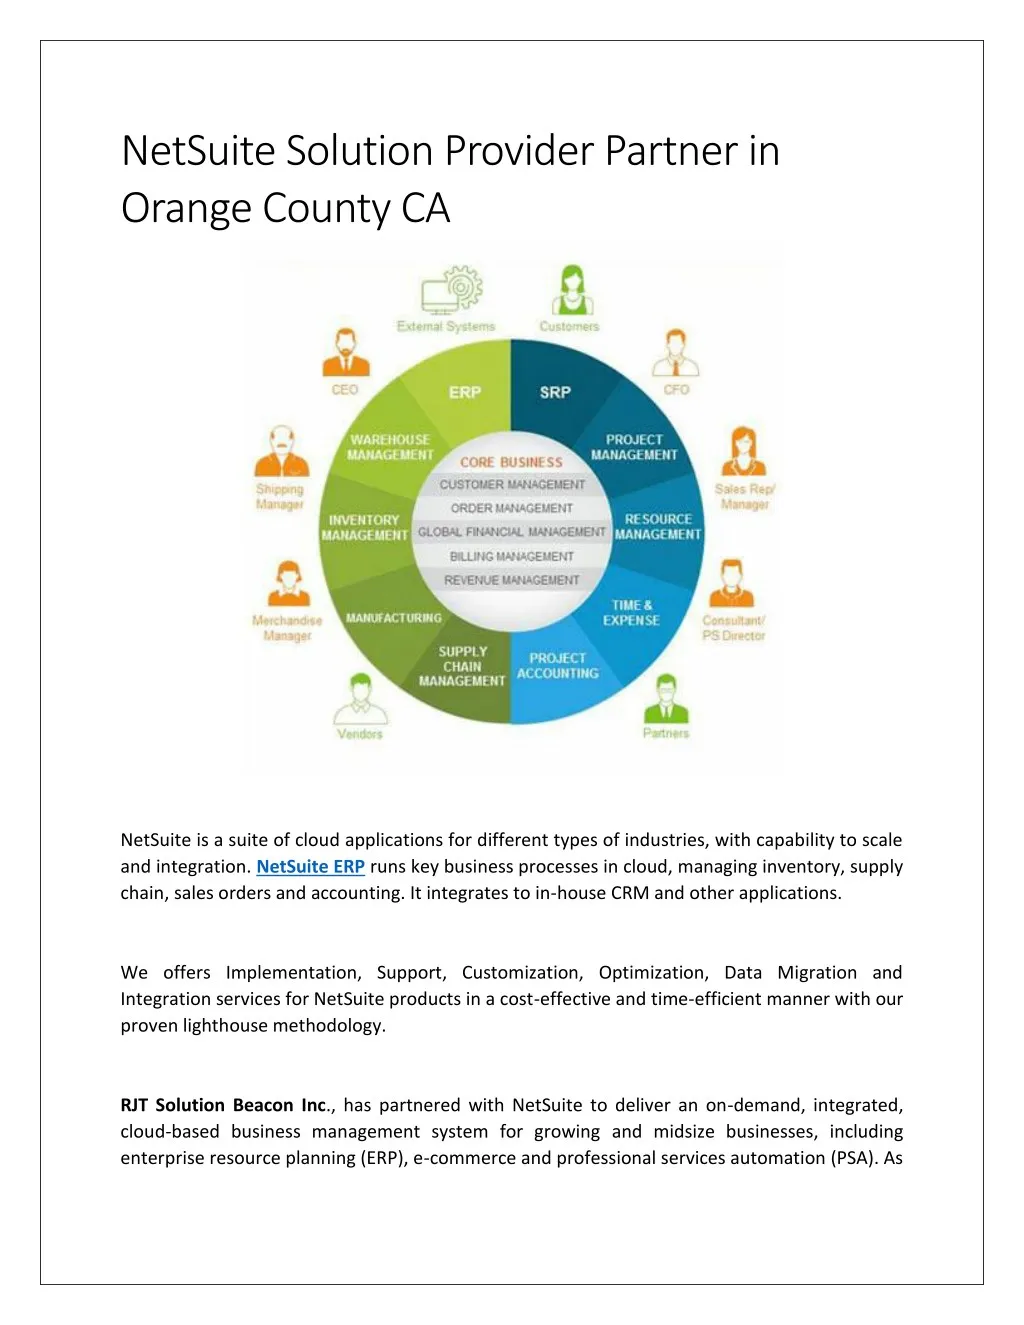 netsuite solution provider partner in orange